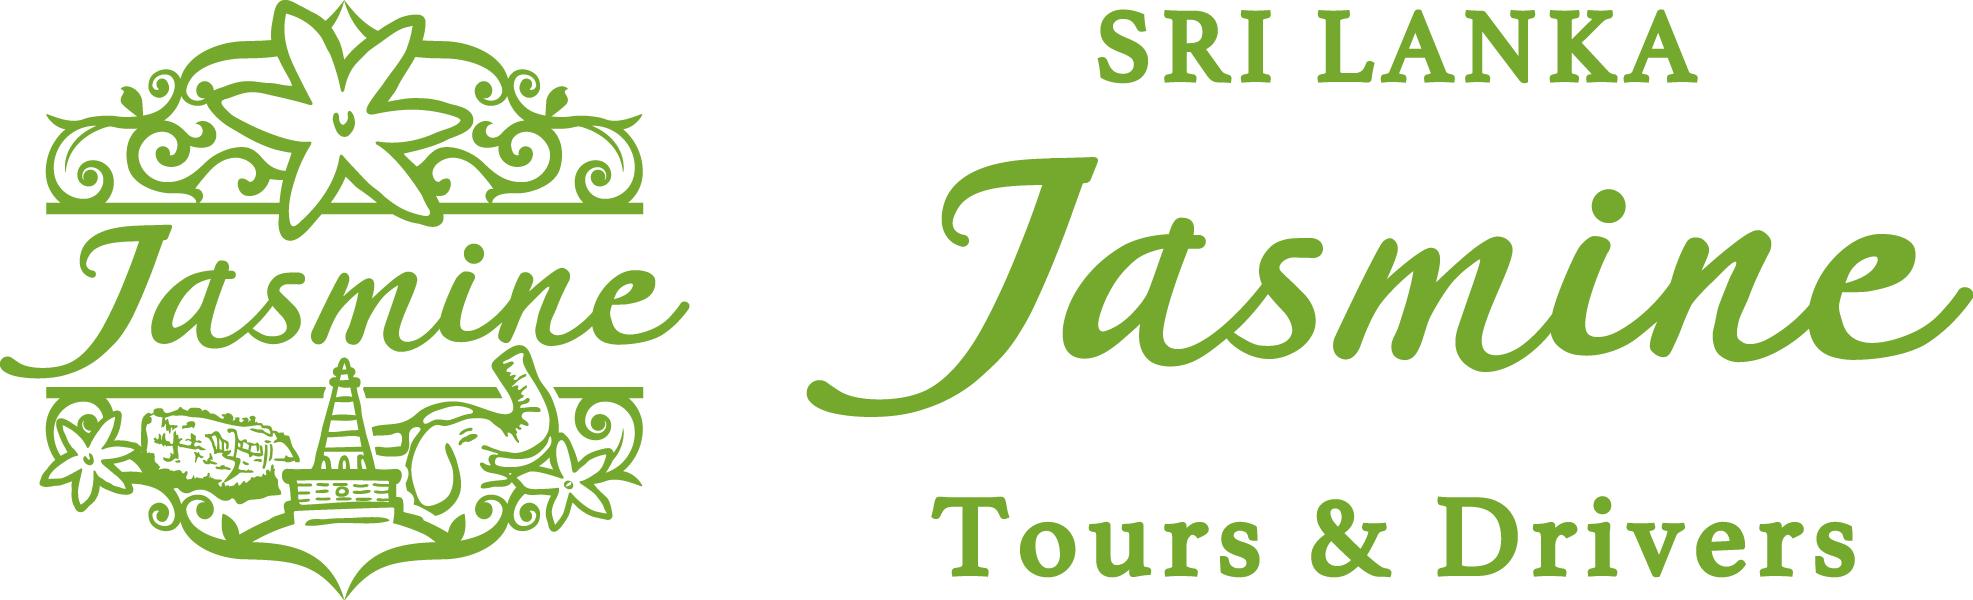 Sri Lanka Jasmine Tours & Drivers